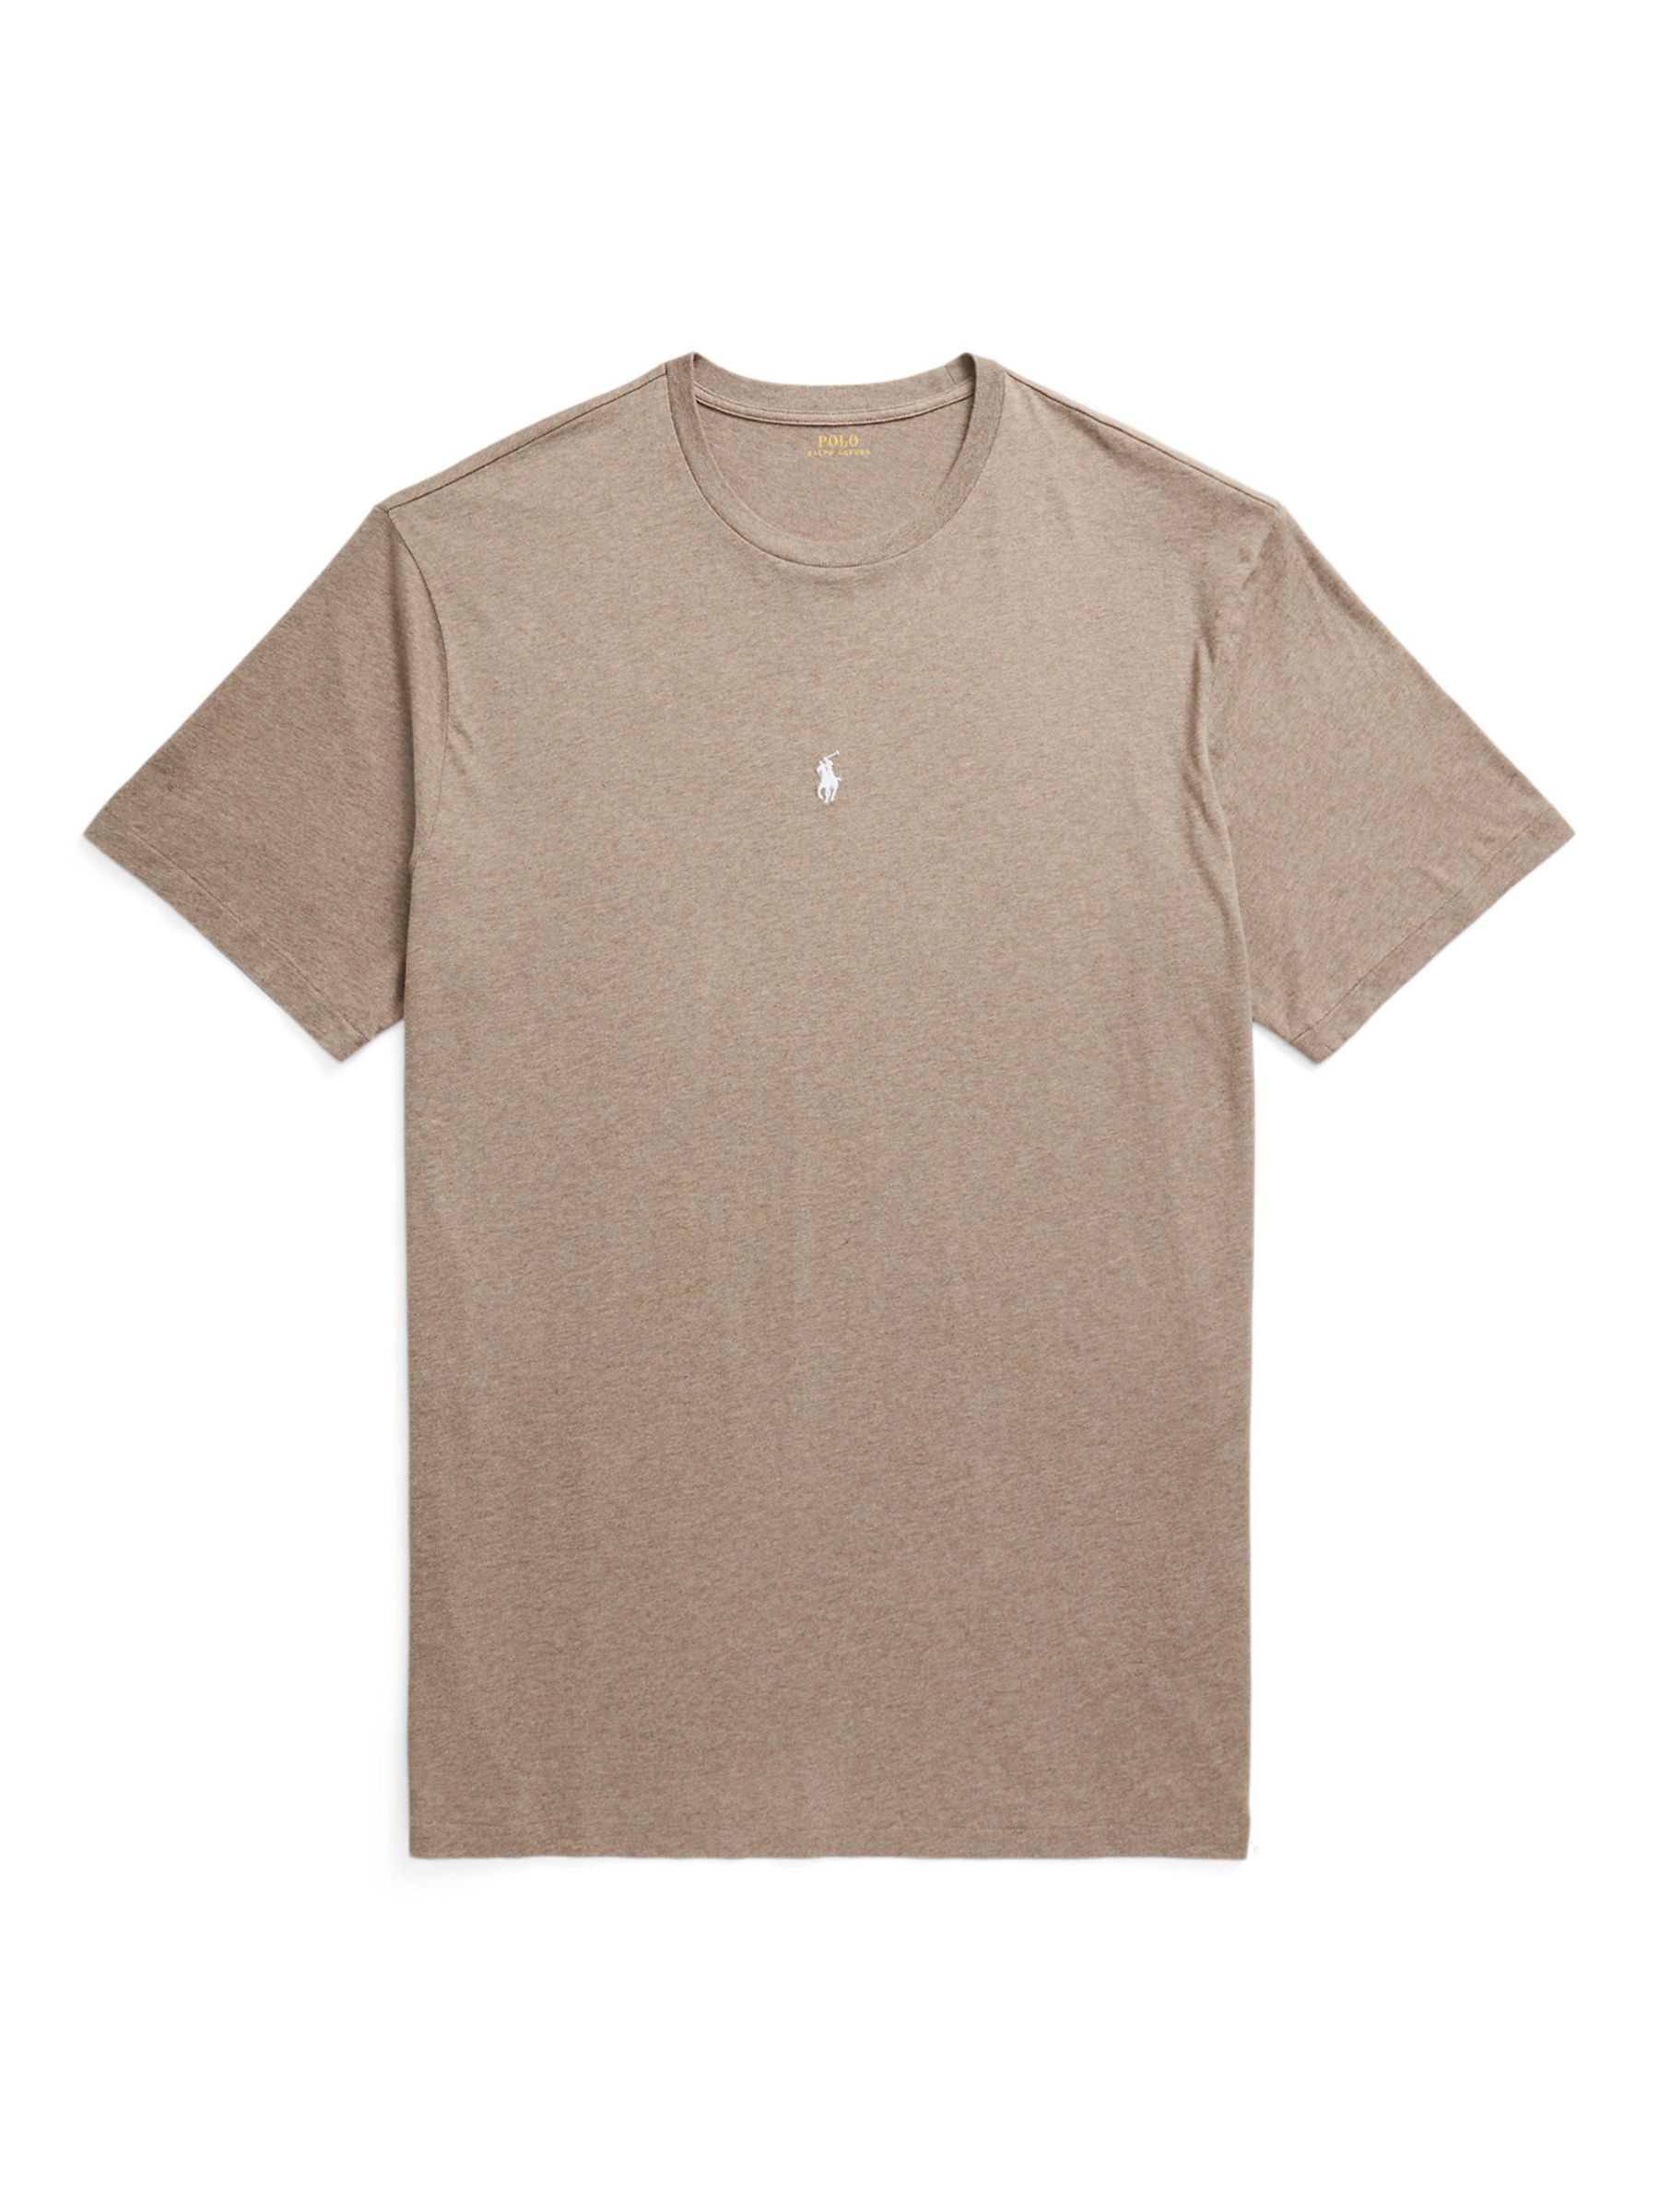 Buy Polo Ralph Lauren Big & Tall Cotton T-Shirt Online at johnlewis.com